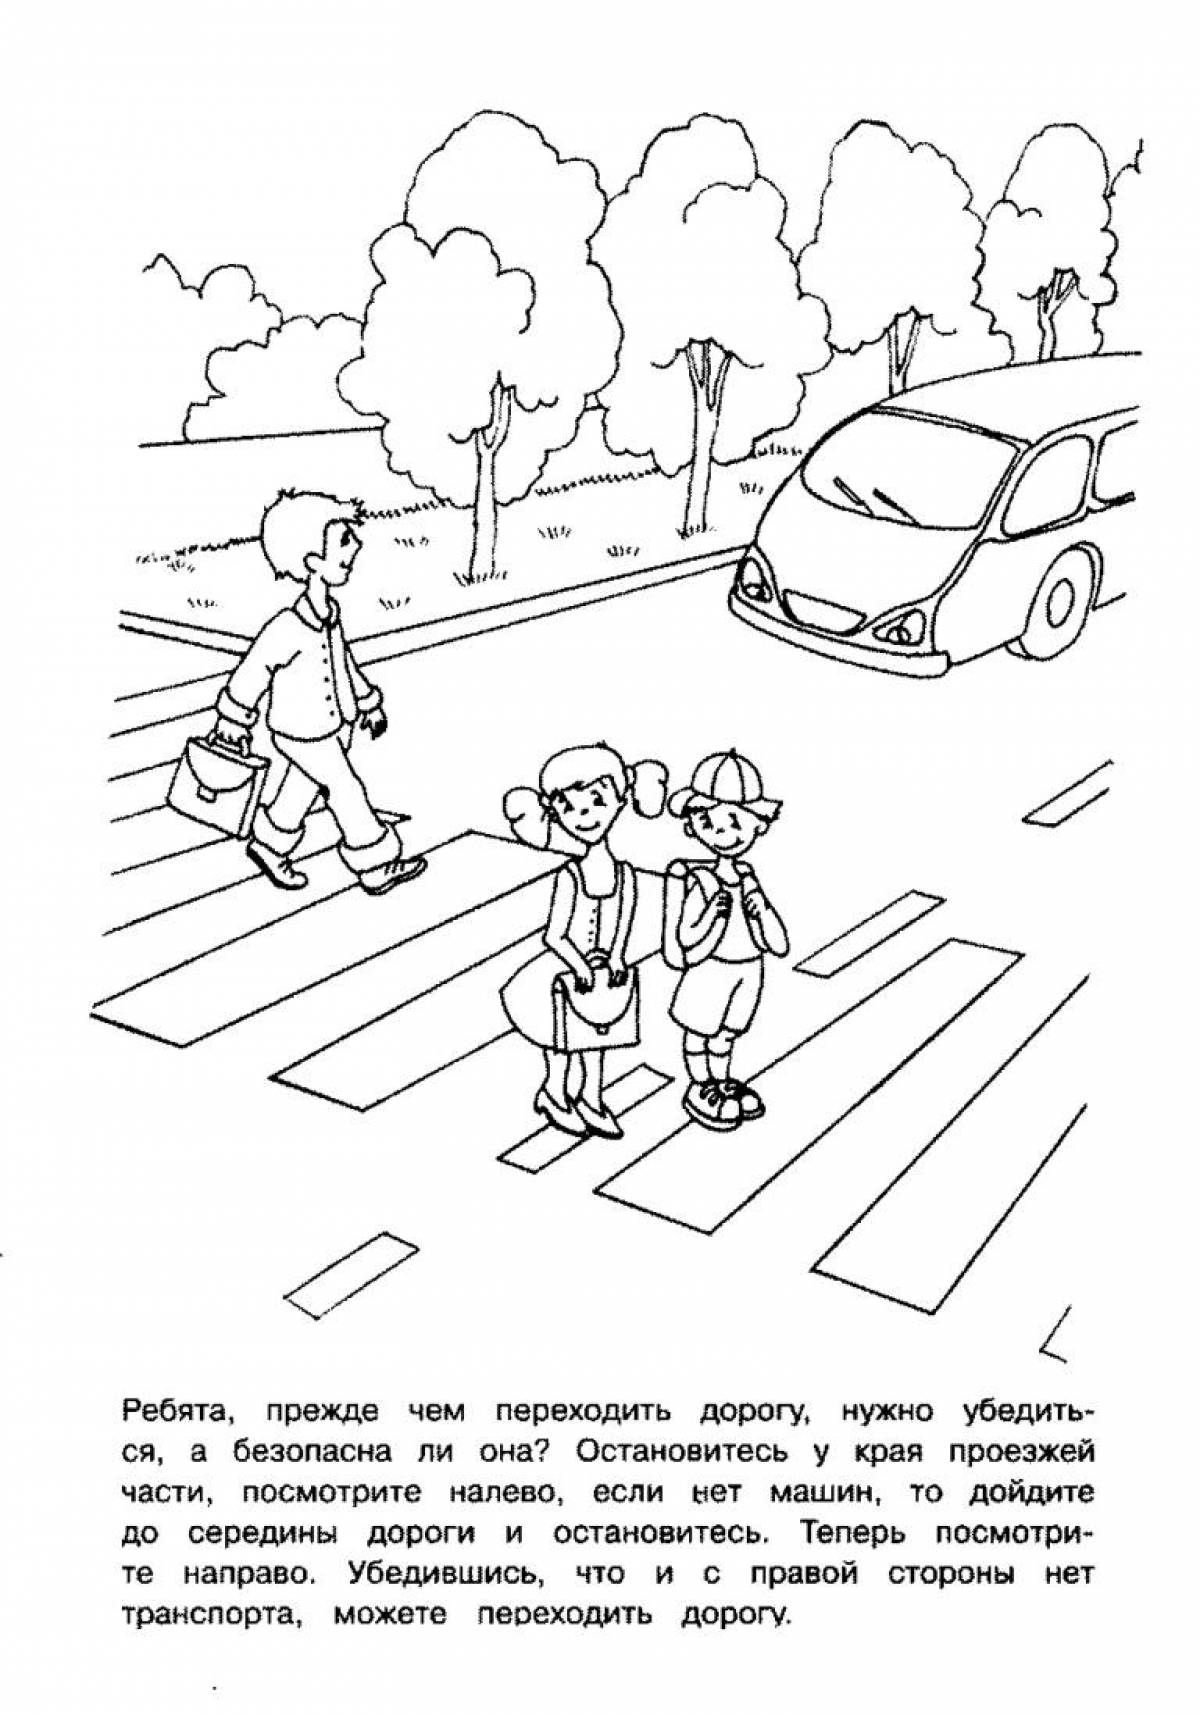 Traffic rules for children #3